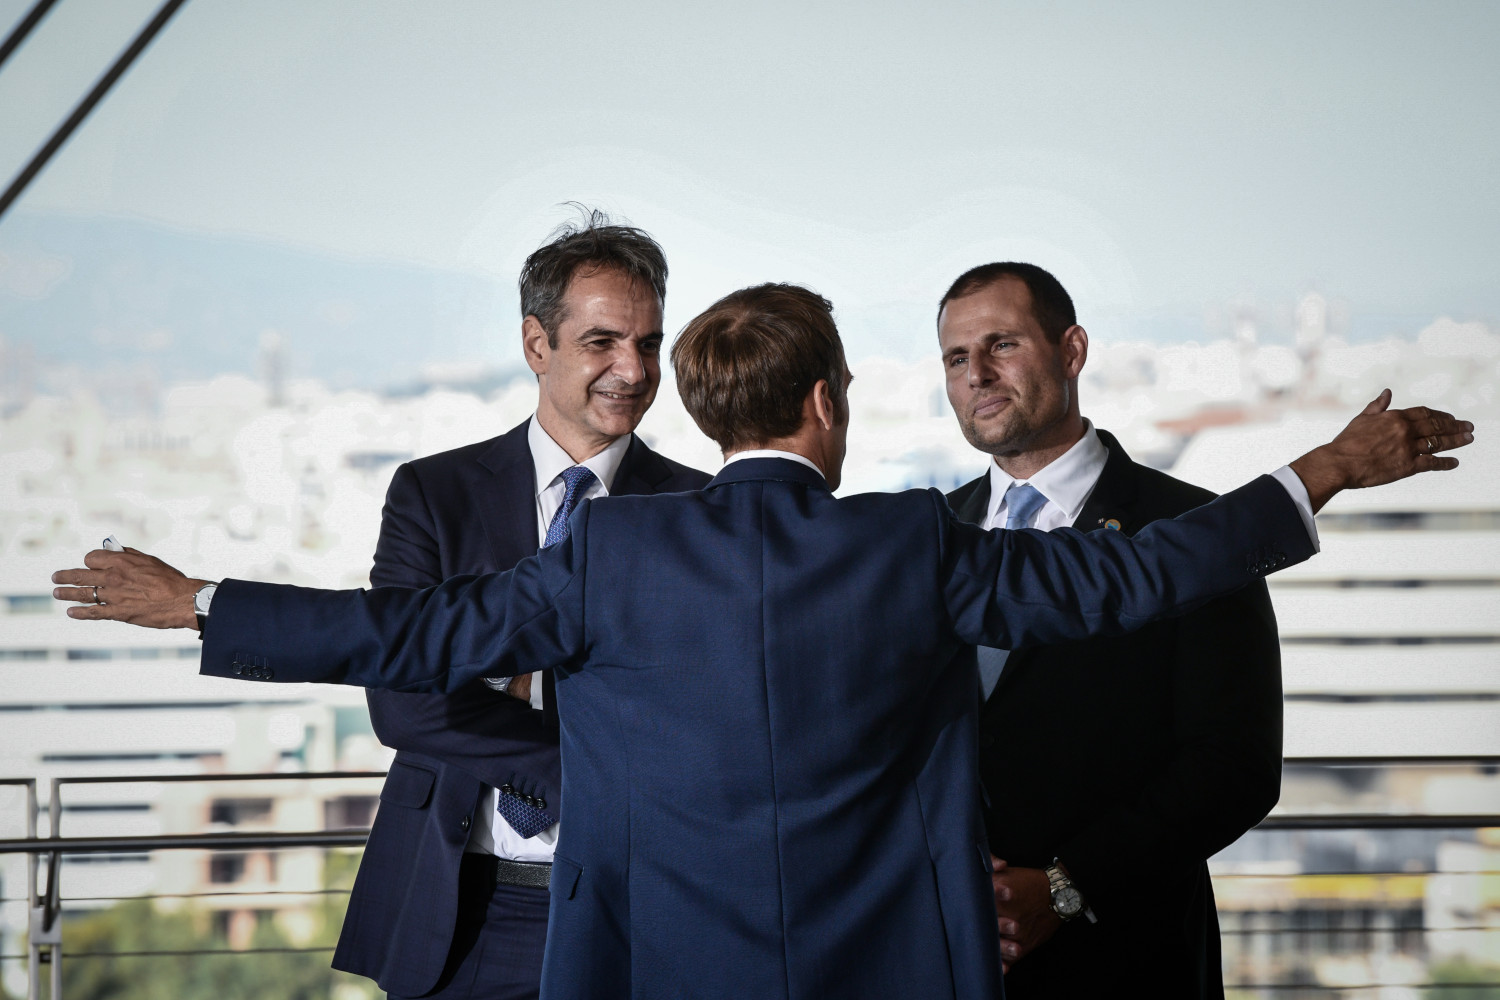 Η Σύνοδος Κορυφής της Αθήνας MED9, με συμμετέχοντες τους κορυφαίους πολιτικούς εκπροσώπους κρατών του Ευρωπαϊκού νότου, έρχεται να εγκαινιάσει μία νέα εποχή για τις Ευρωπαϊκές χώρες της λεκάνης της Μεσογείου […]